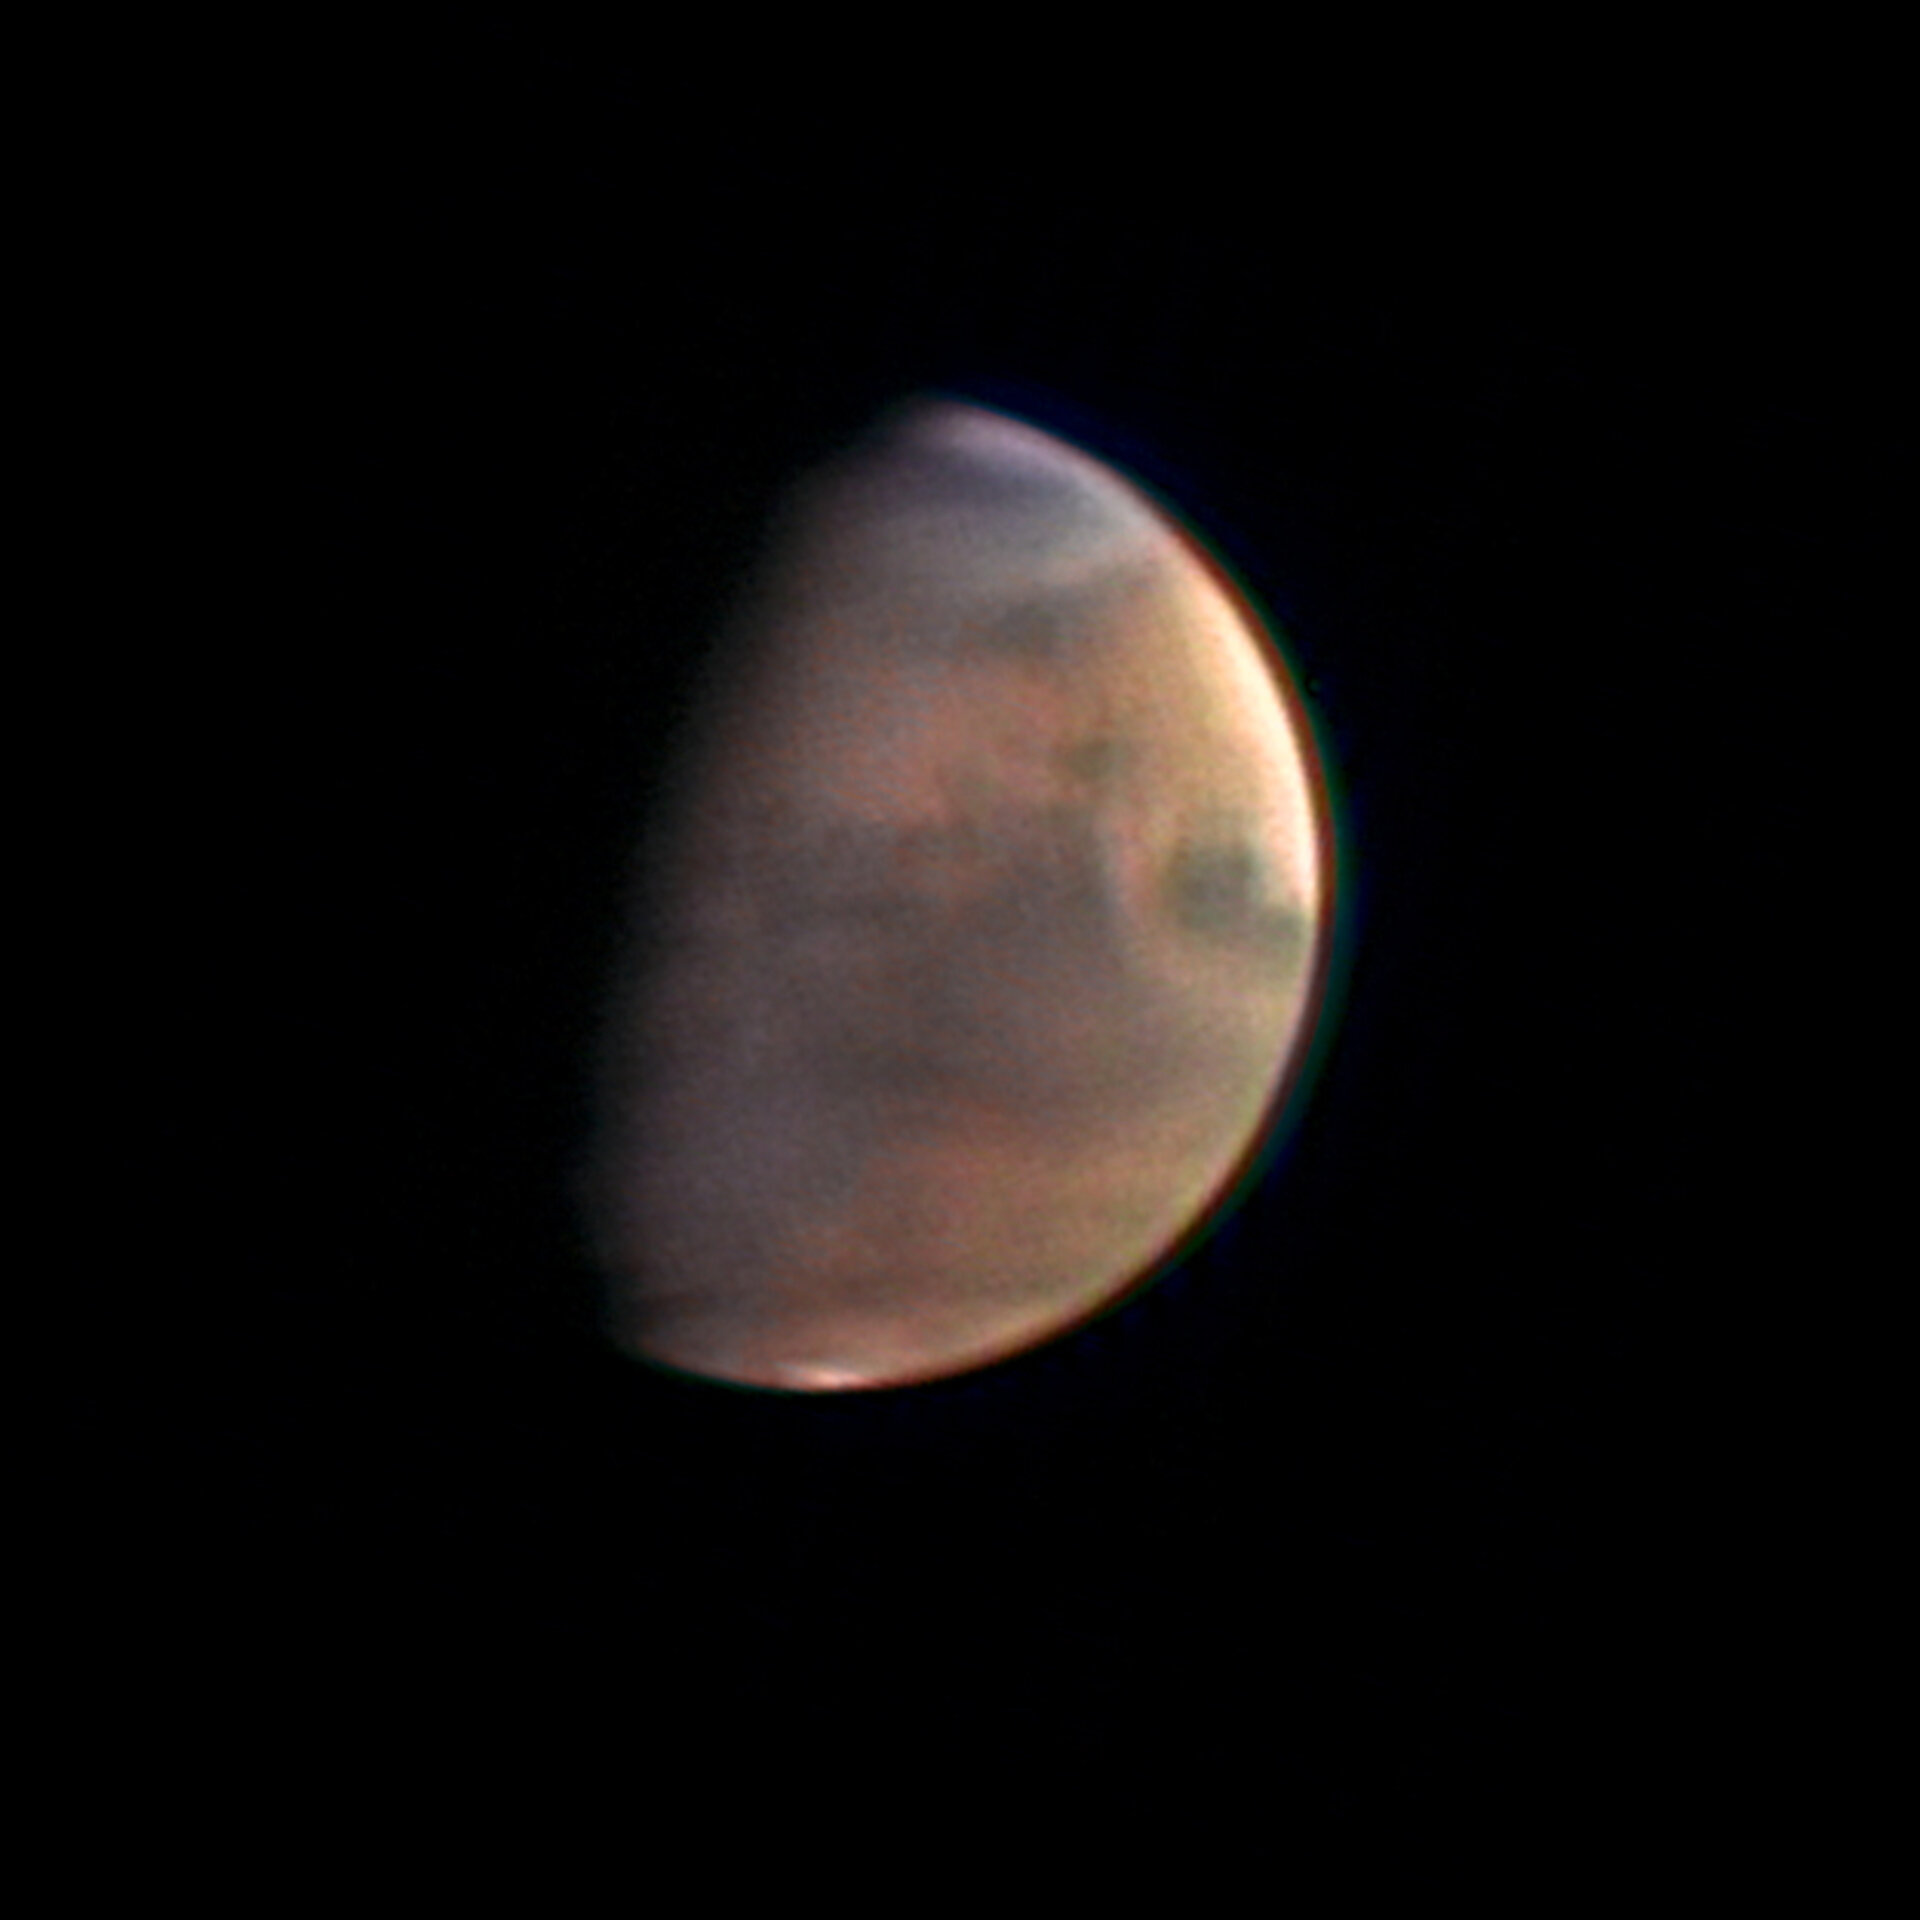 Il pianeta Marte: immagine presa il 1 dicembre a 5.5 milioni di km di distanza